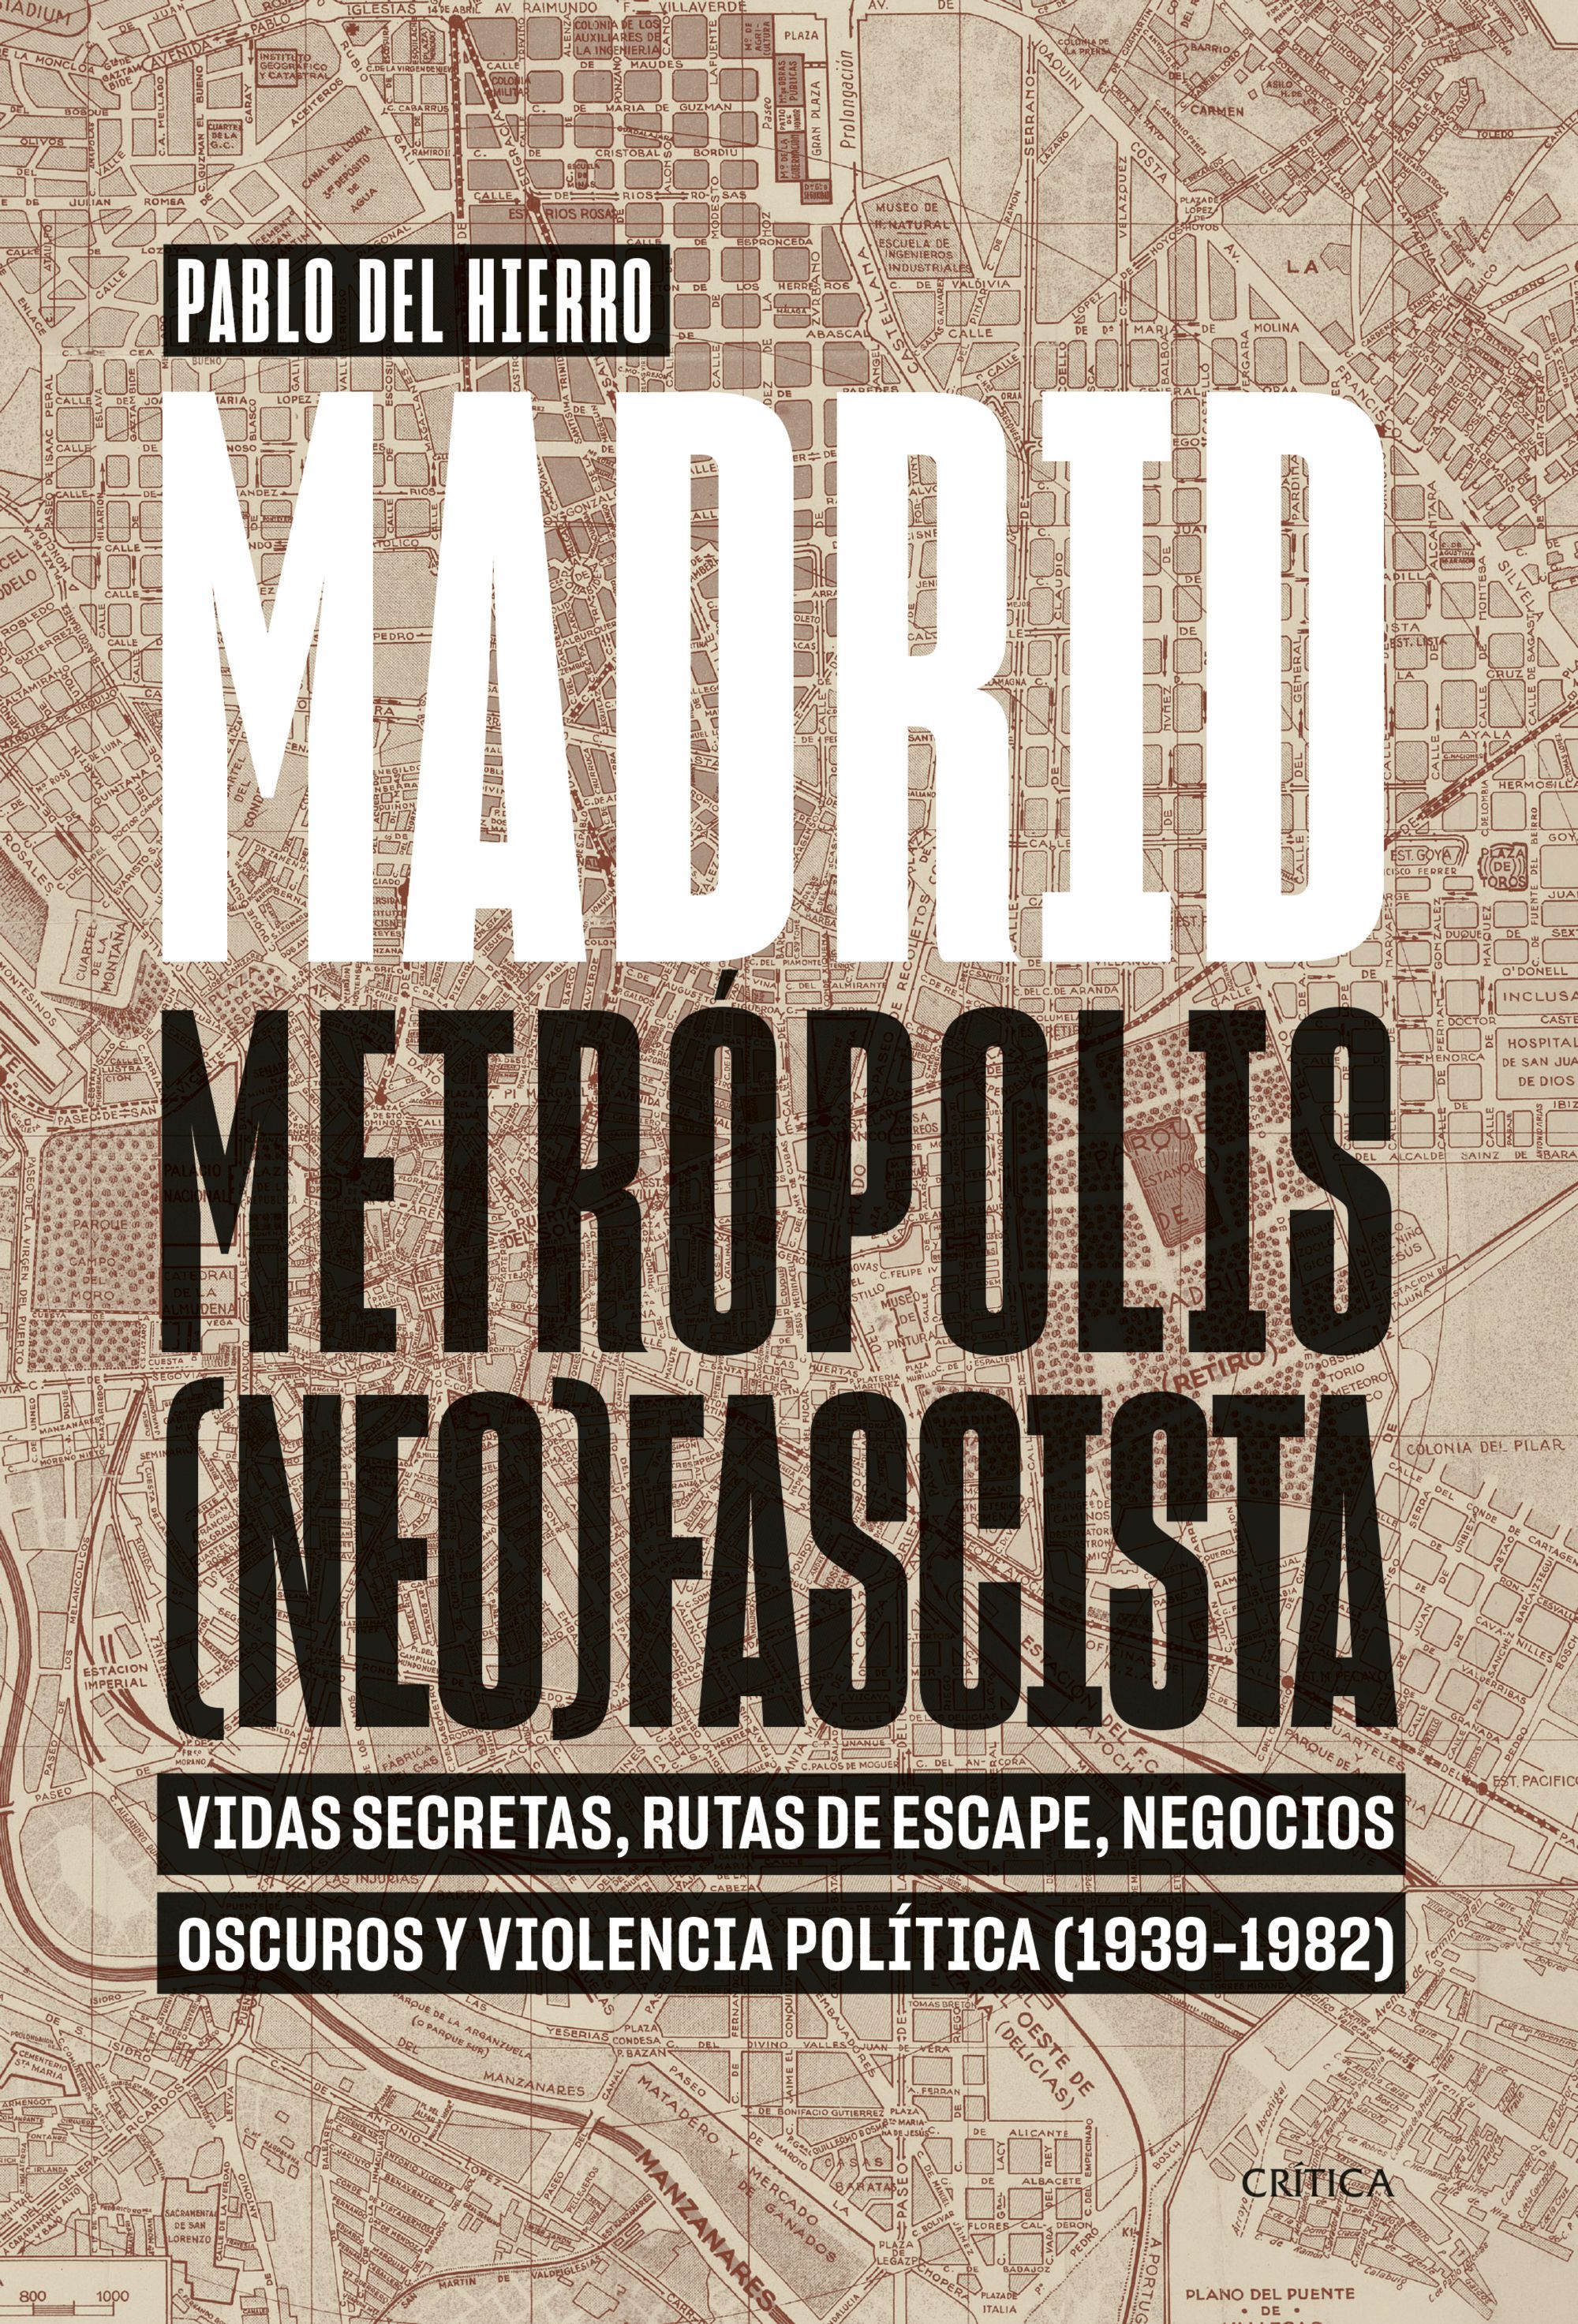 MADRID, METRÓPOLIS (NEO)FASCISTA. VIDAS SECRETAS, RUTAS DE ESCAPE, NEGOCIOS OSCUROS Y VIOLENCIA POLÍTICA (1939-1982)